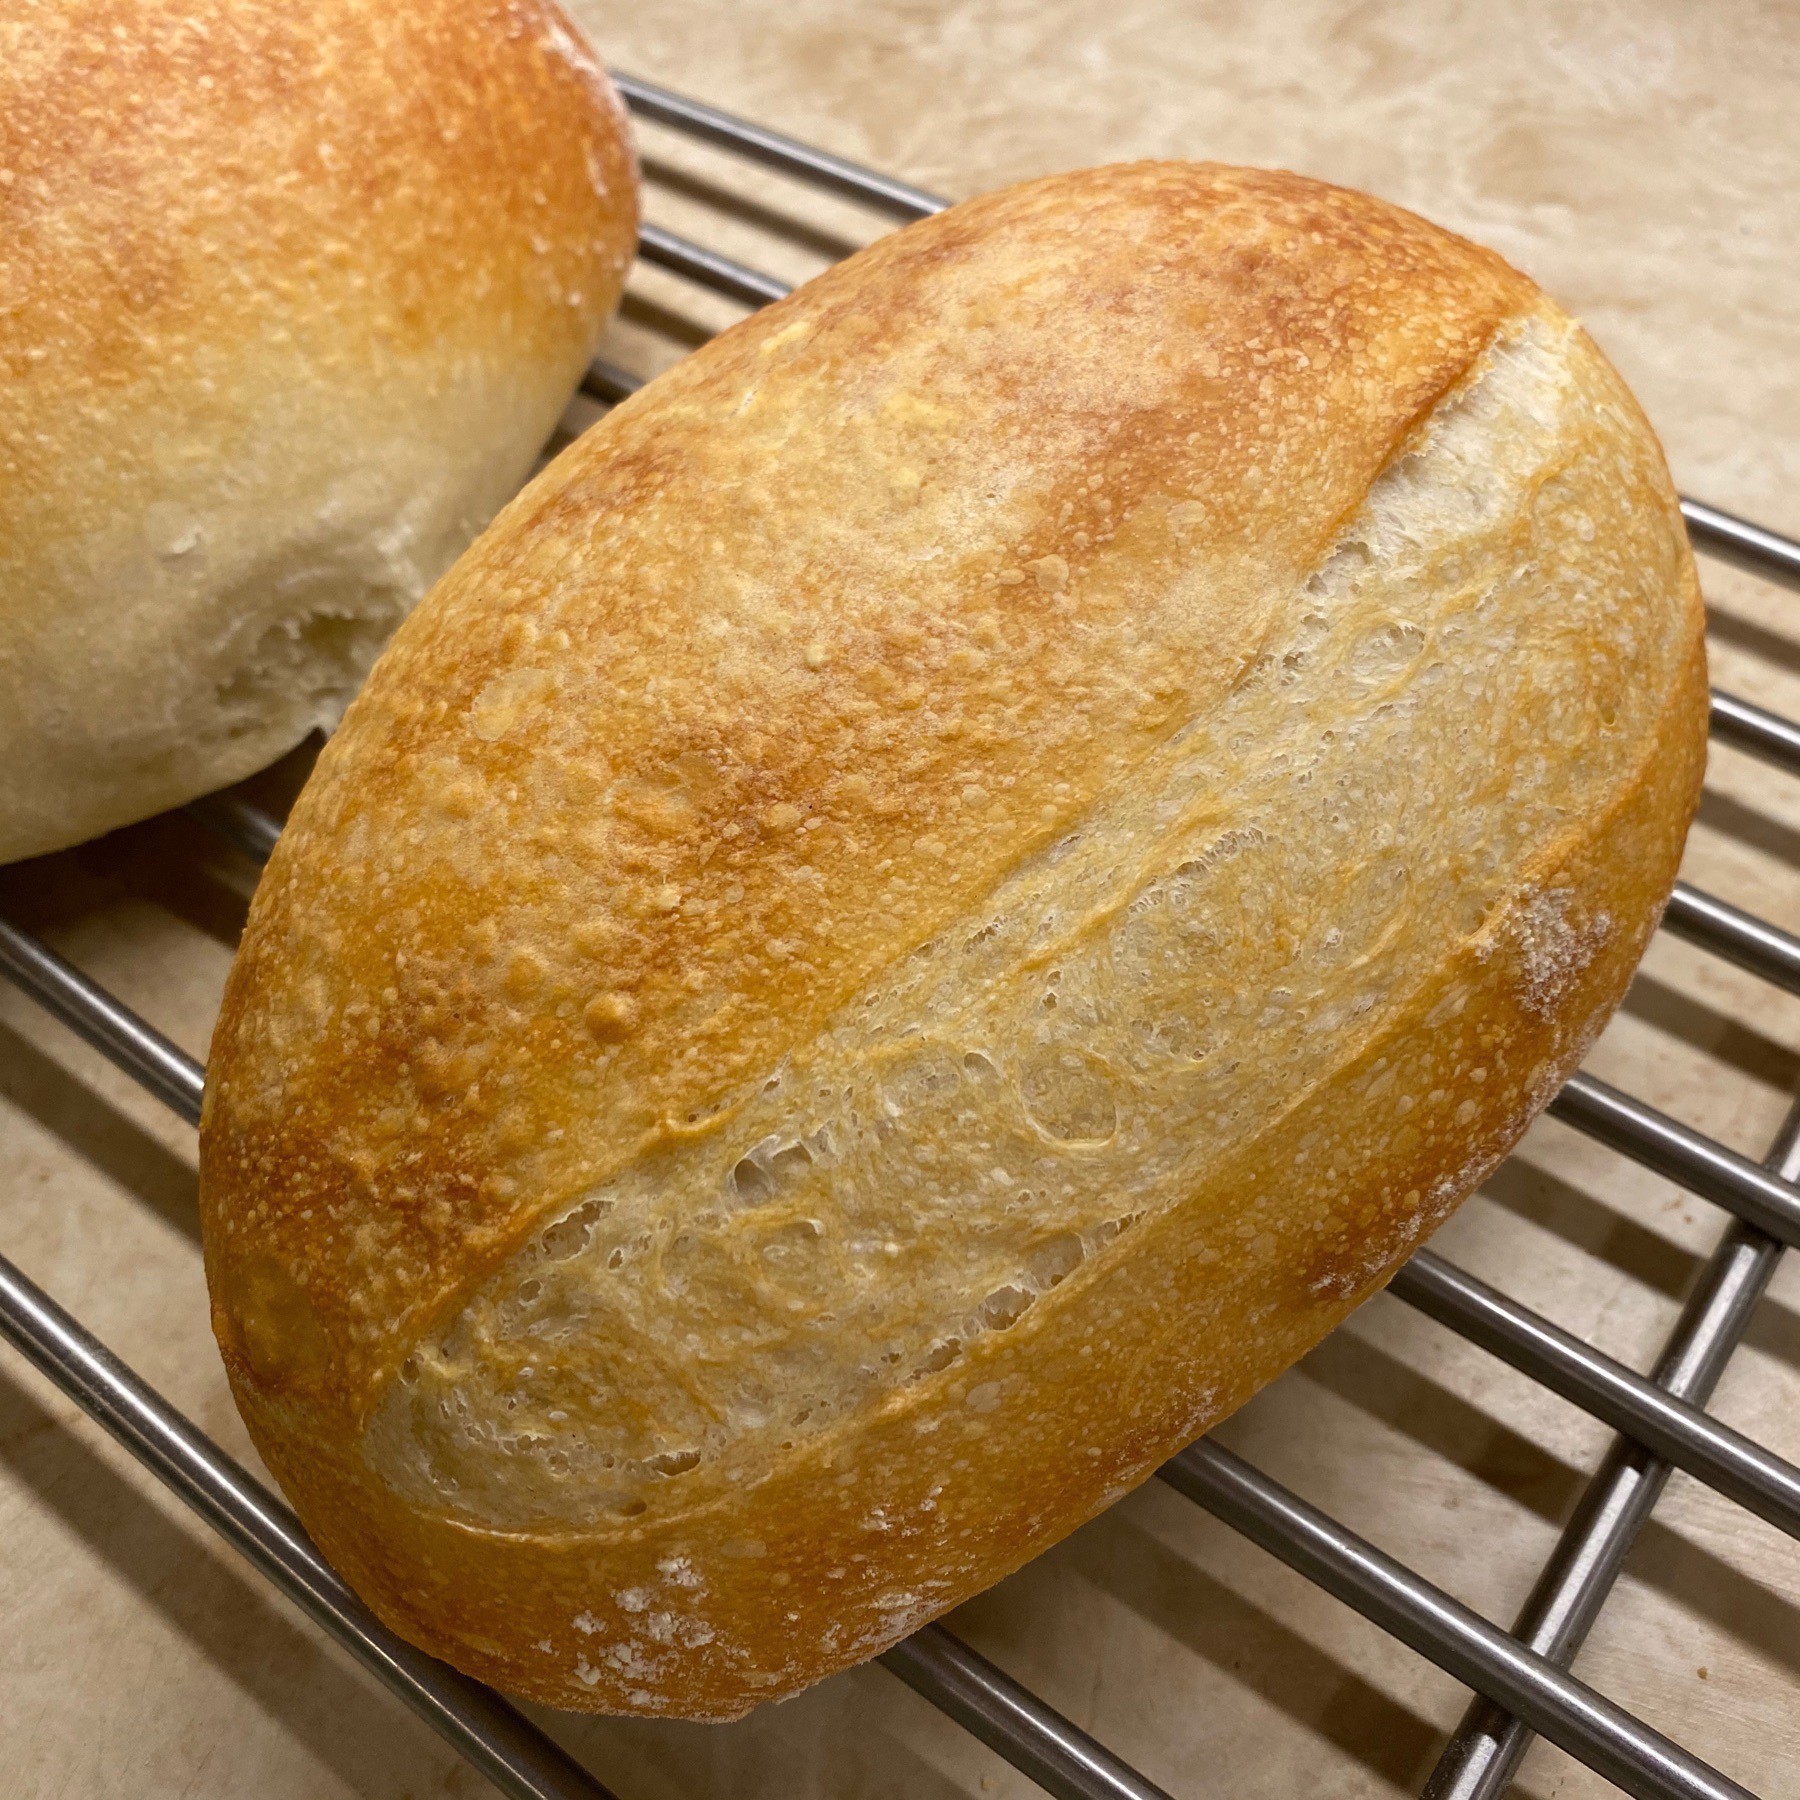 Sourdough bread cooling.